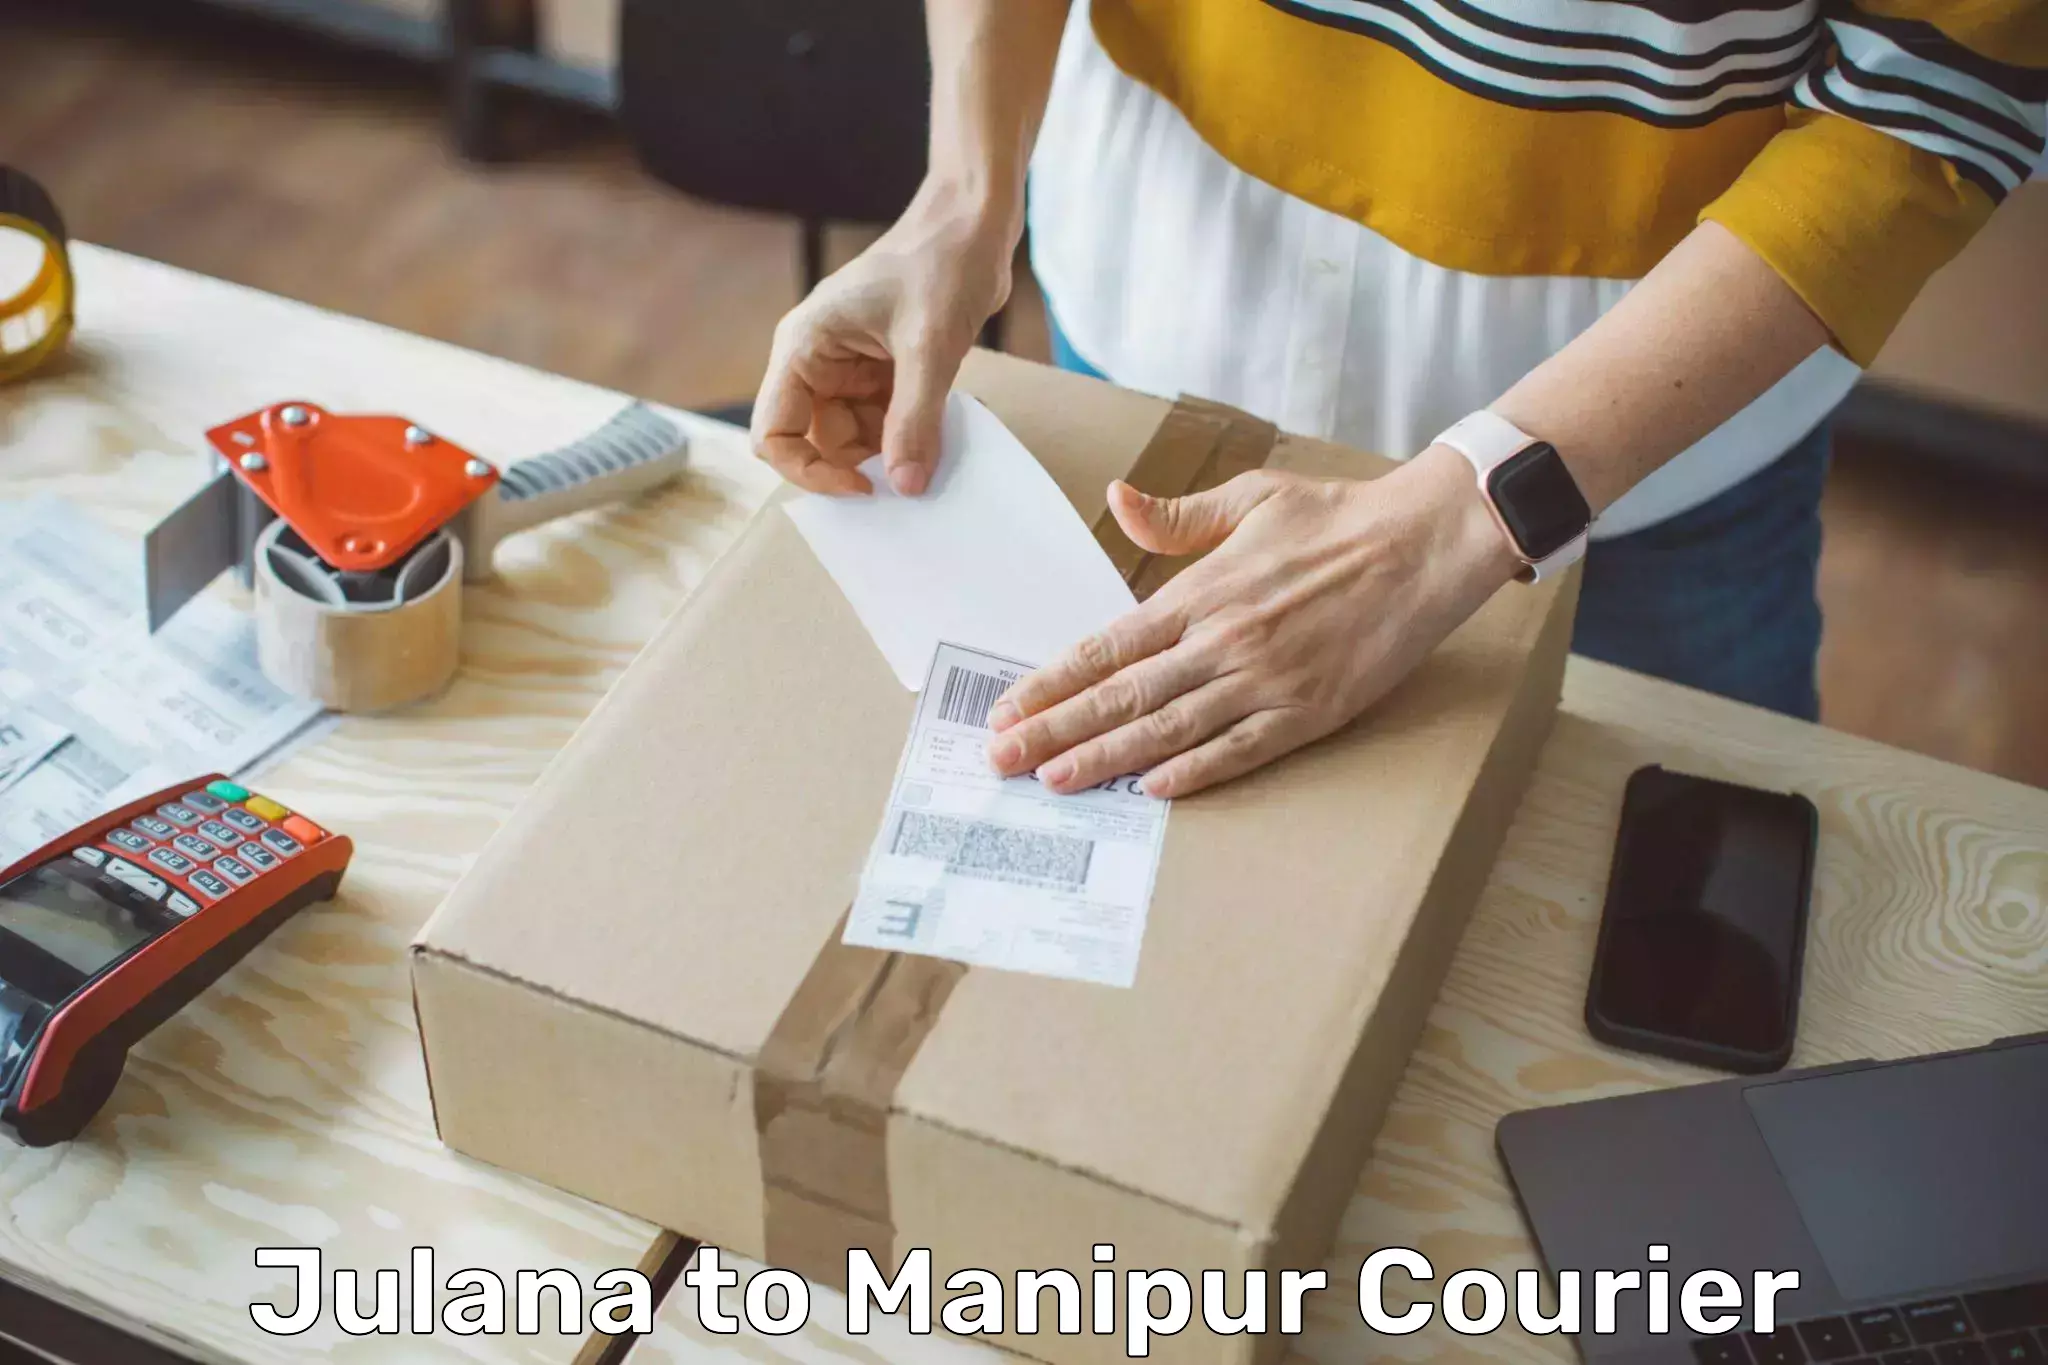 Smart logistics strategies Julana to Manipur